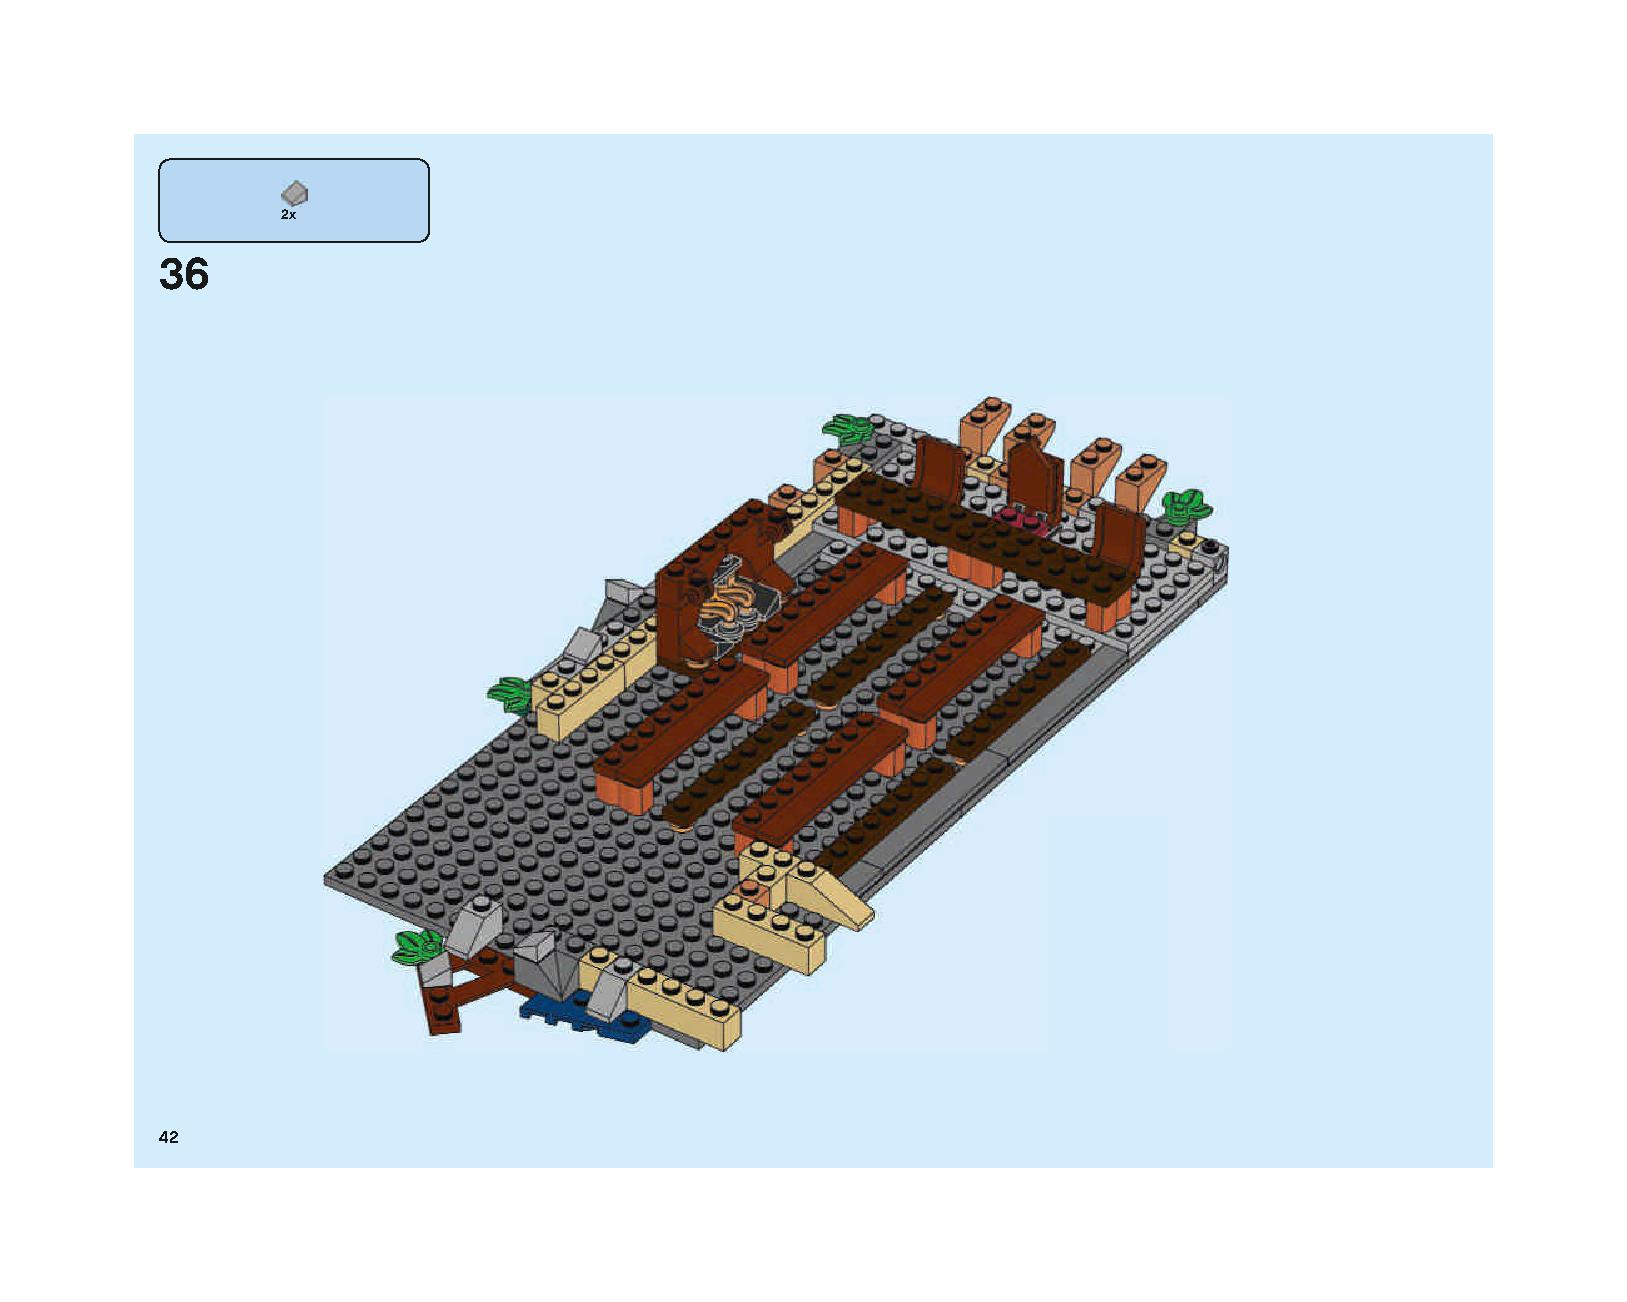 ホグワーツの大広間 75954 レゴの商品情報 レゴの説明書・組立方法 42 page